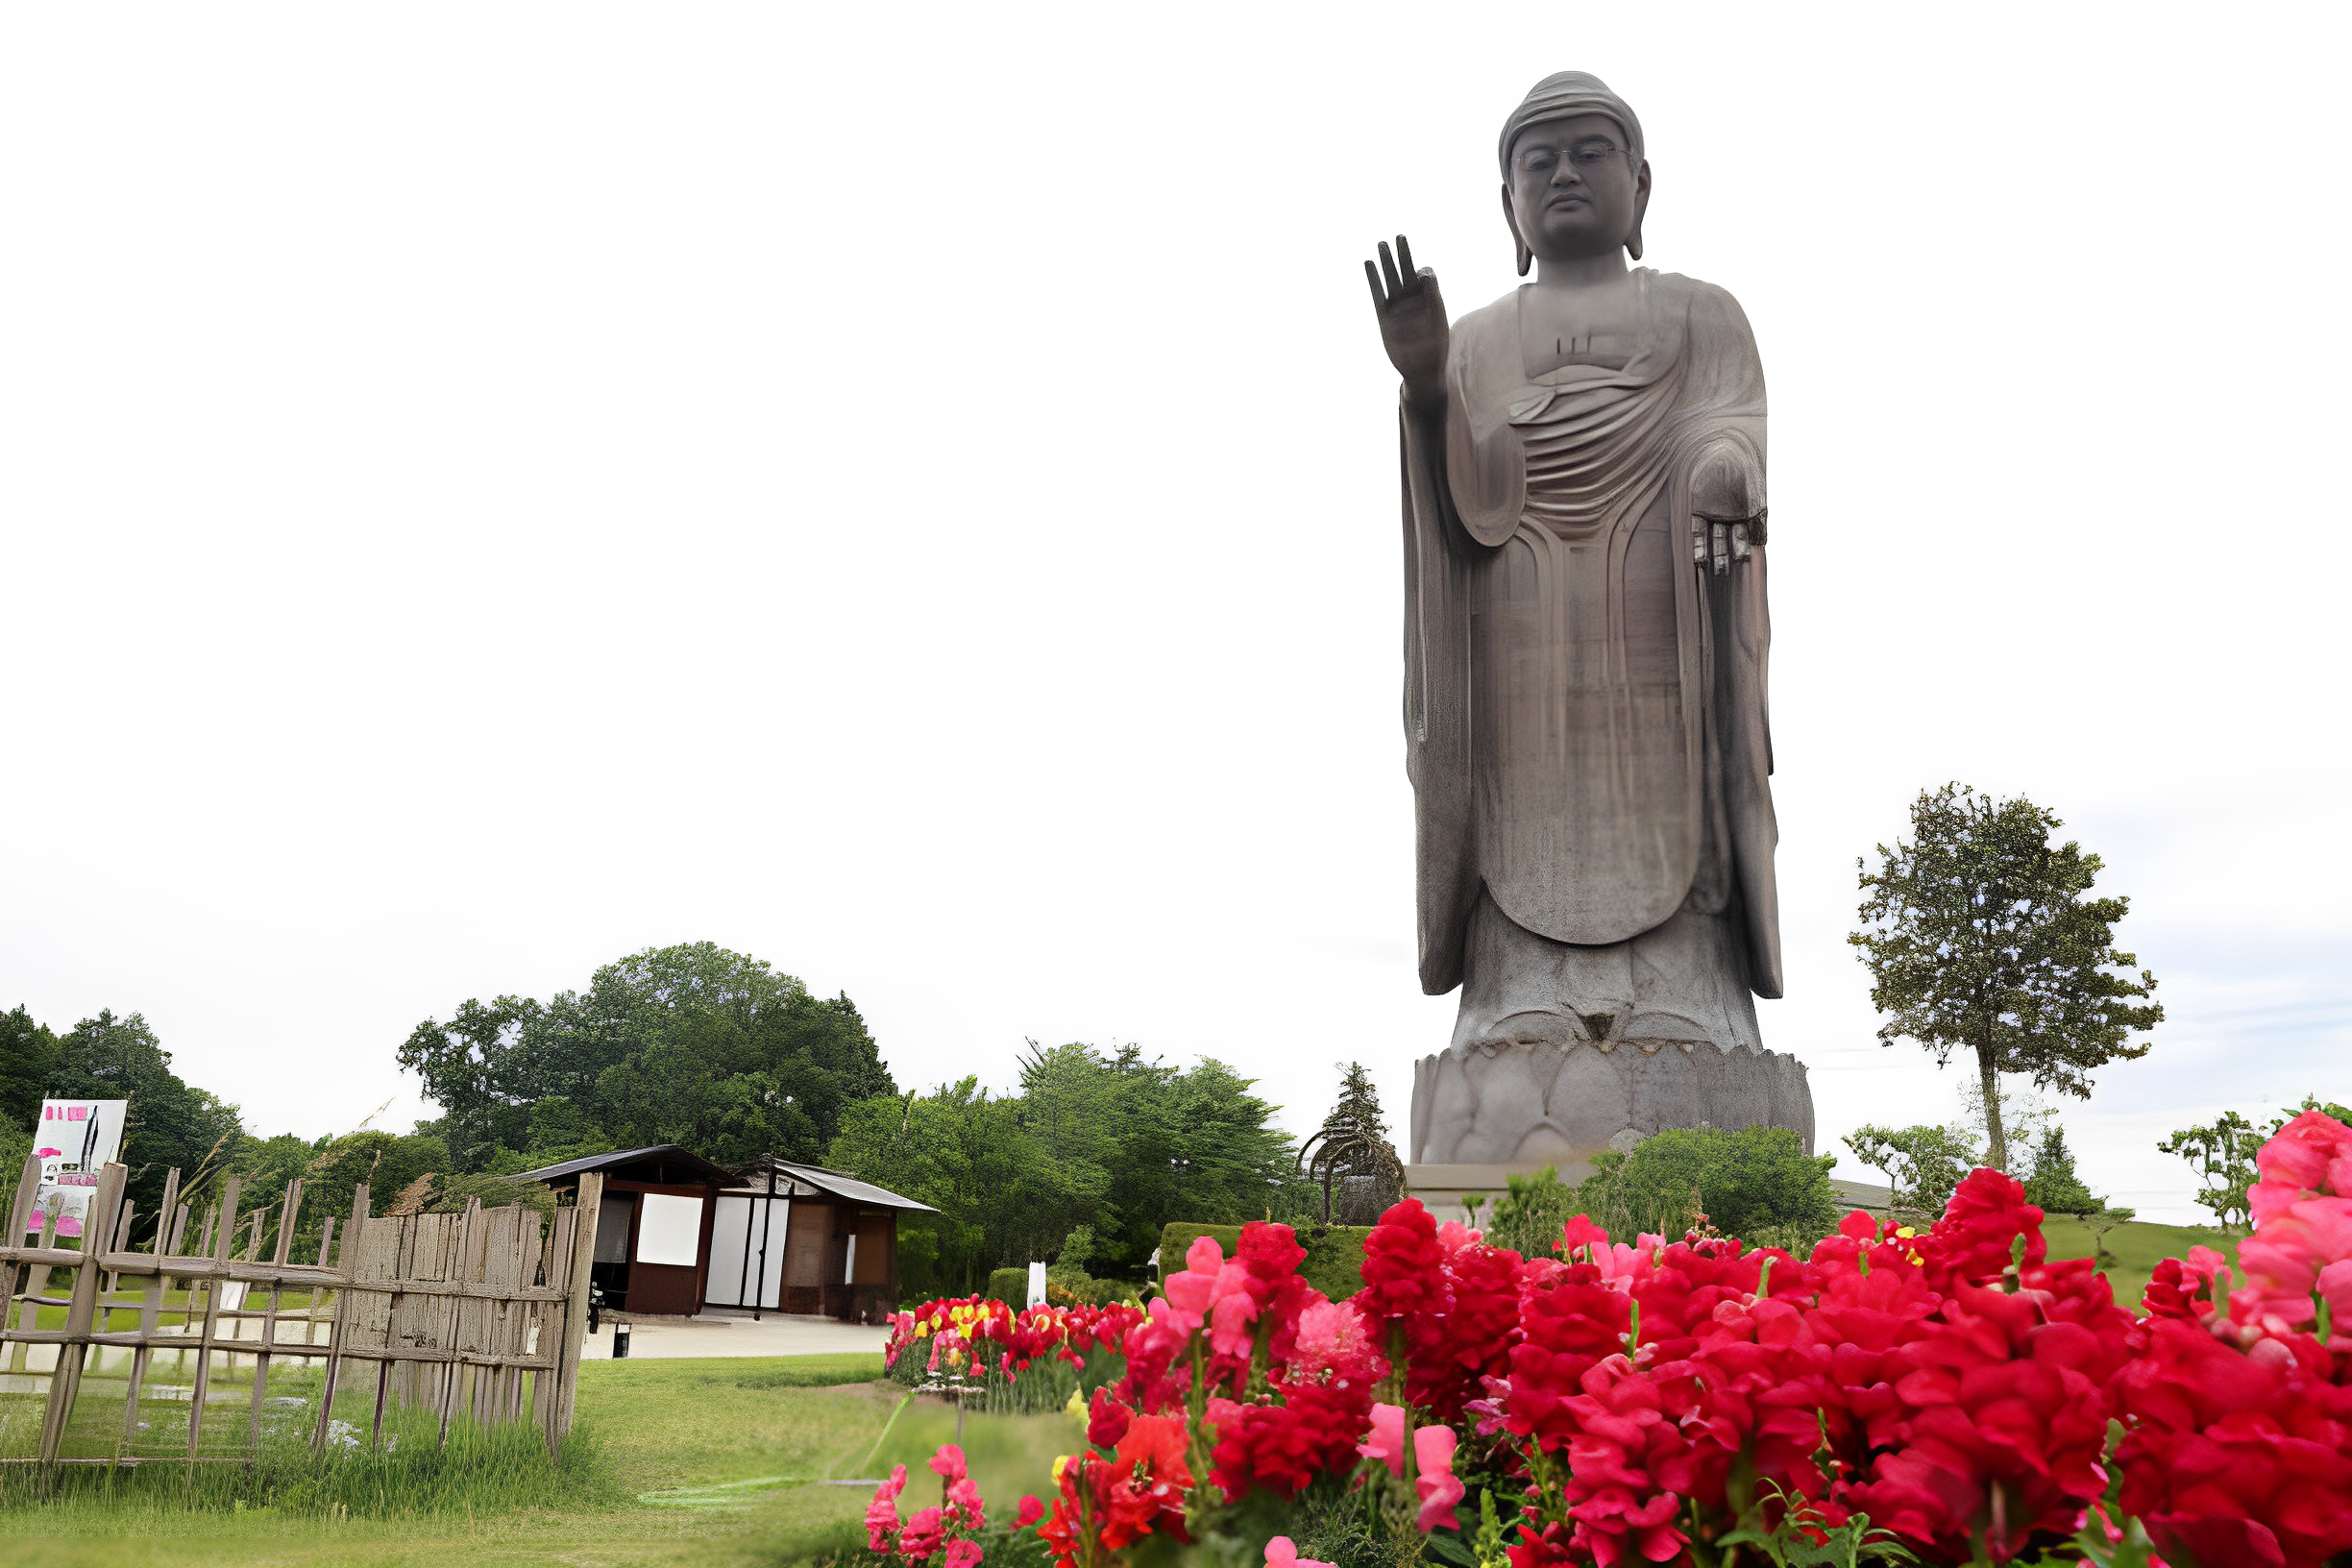 Famous Buddha Statues